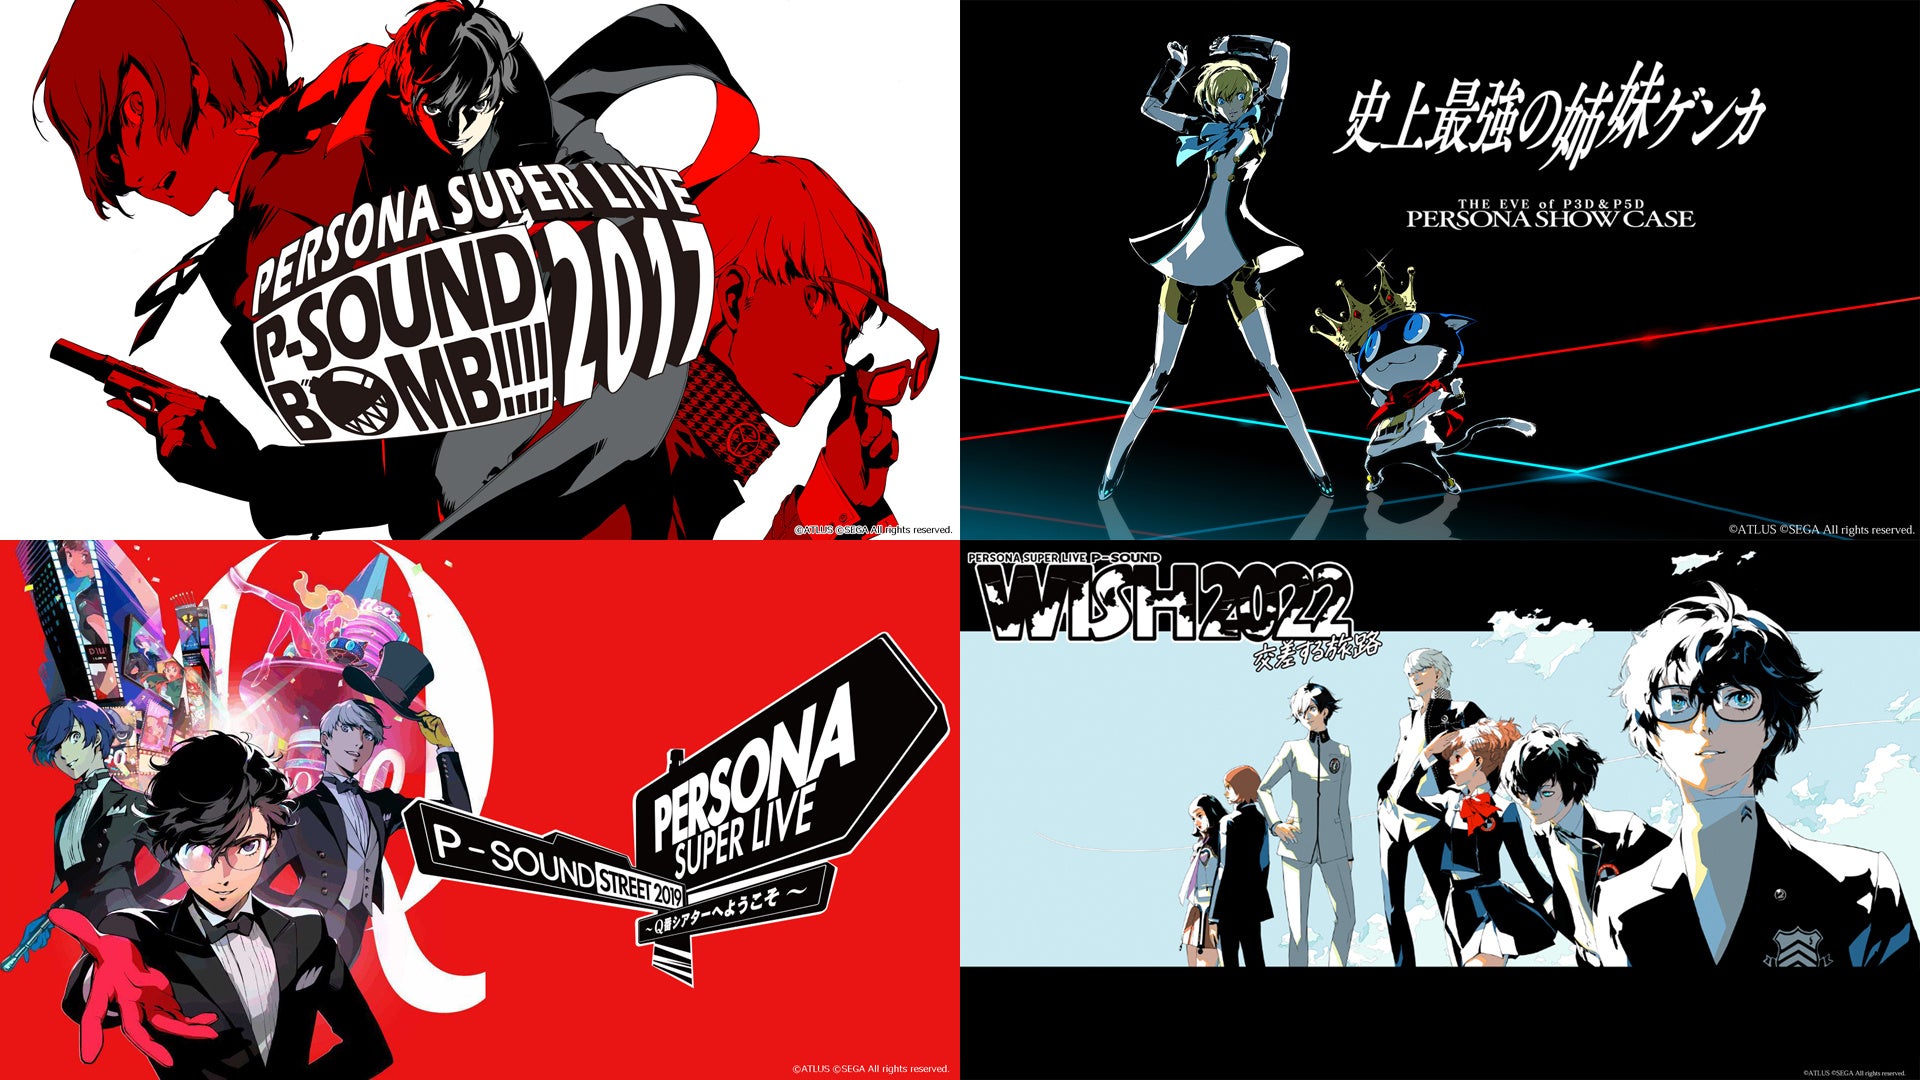 『ペルソナ』シリーズ人気ライブ特集 PERSONA SUPER LIVE、 Persona Show Caseなど6公演 3/23-4/6、ニコ生で3週連続配信